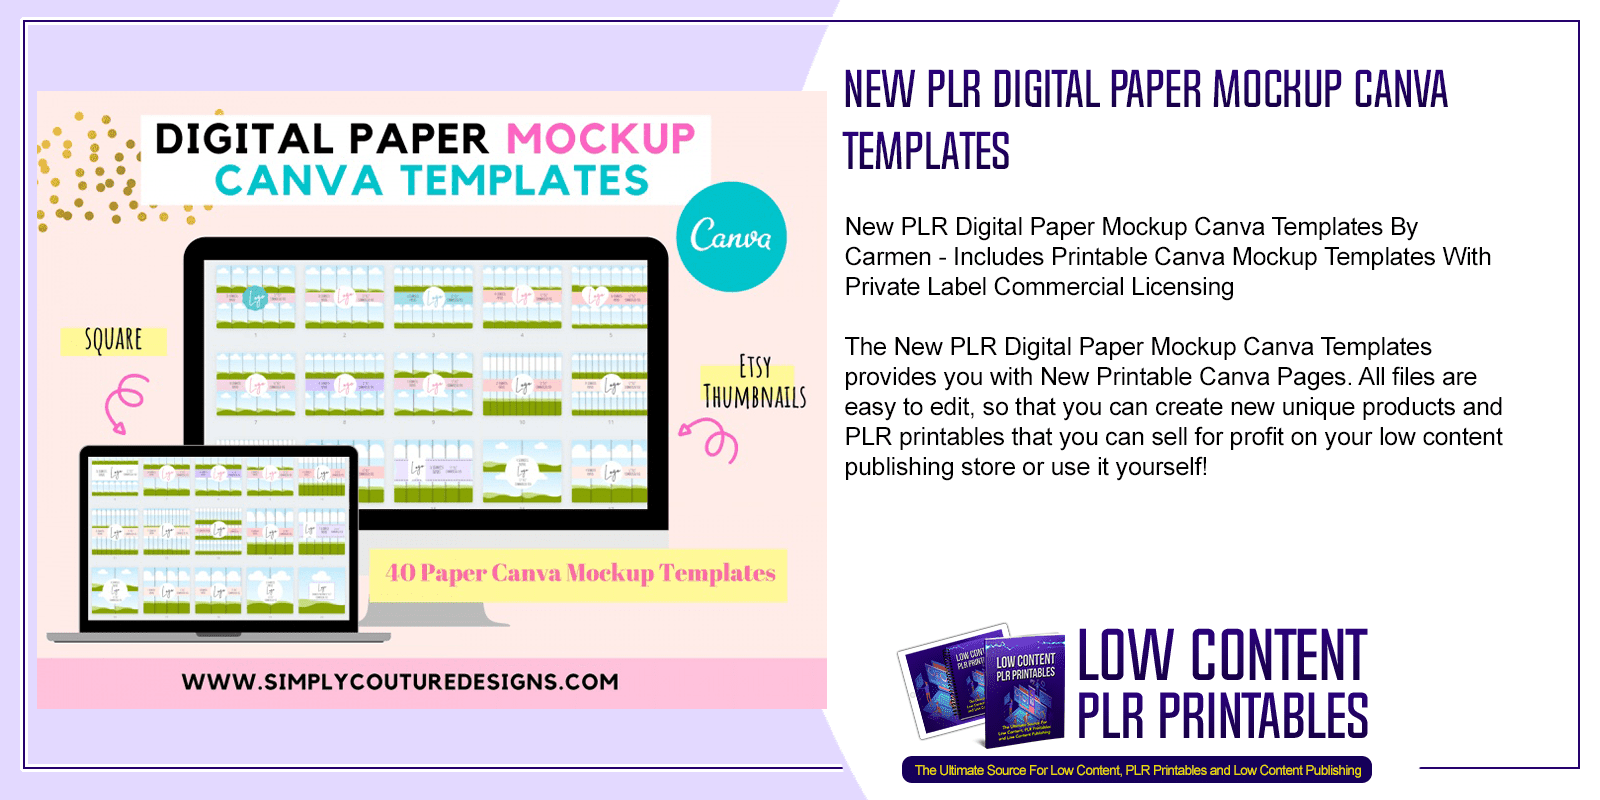 New PLR Digital Paper Mockup Canva Templates